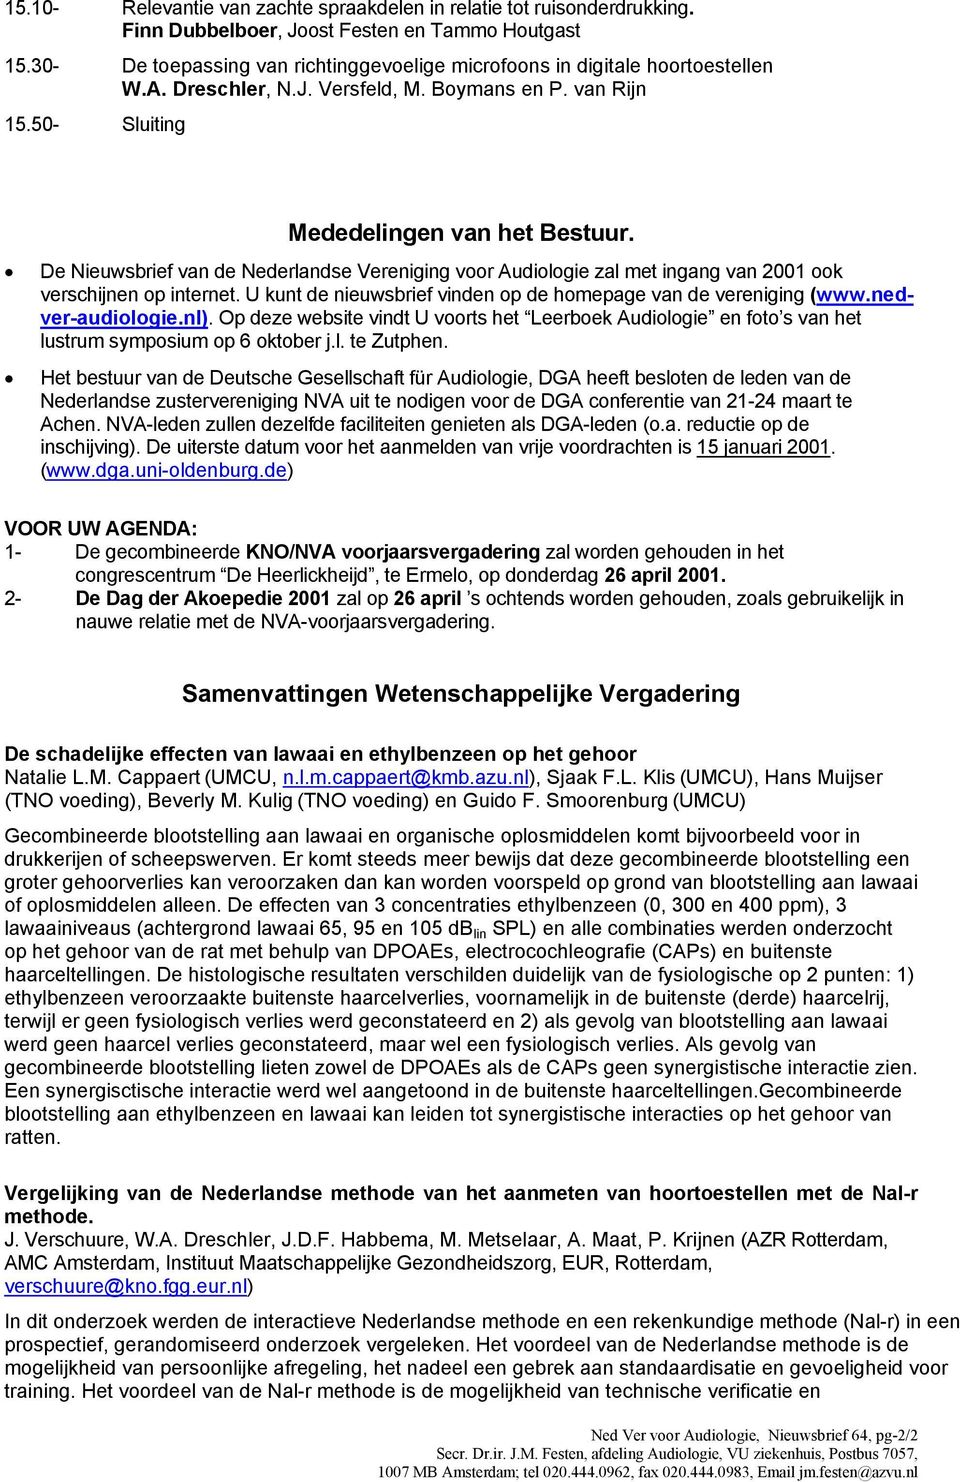 De Nieuwsbrief van de Nederlandse Vereniging voor Audiologie zal met ingang van 2001 ook verschijnen op internet. U kunt de nieuwsbrief vinden op de homepage van de vereniging (www.nedver-audiologie.